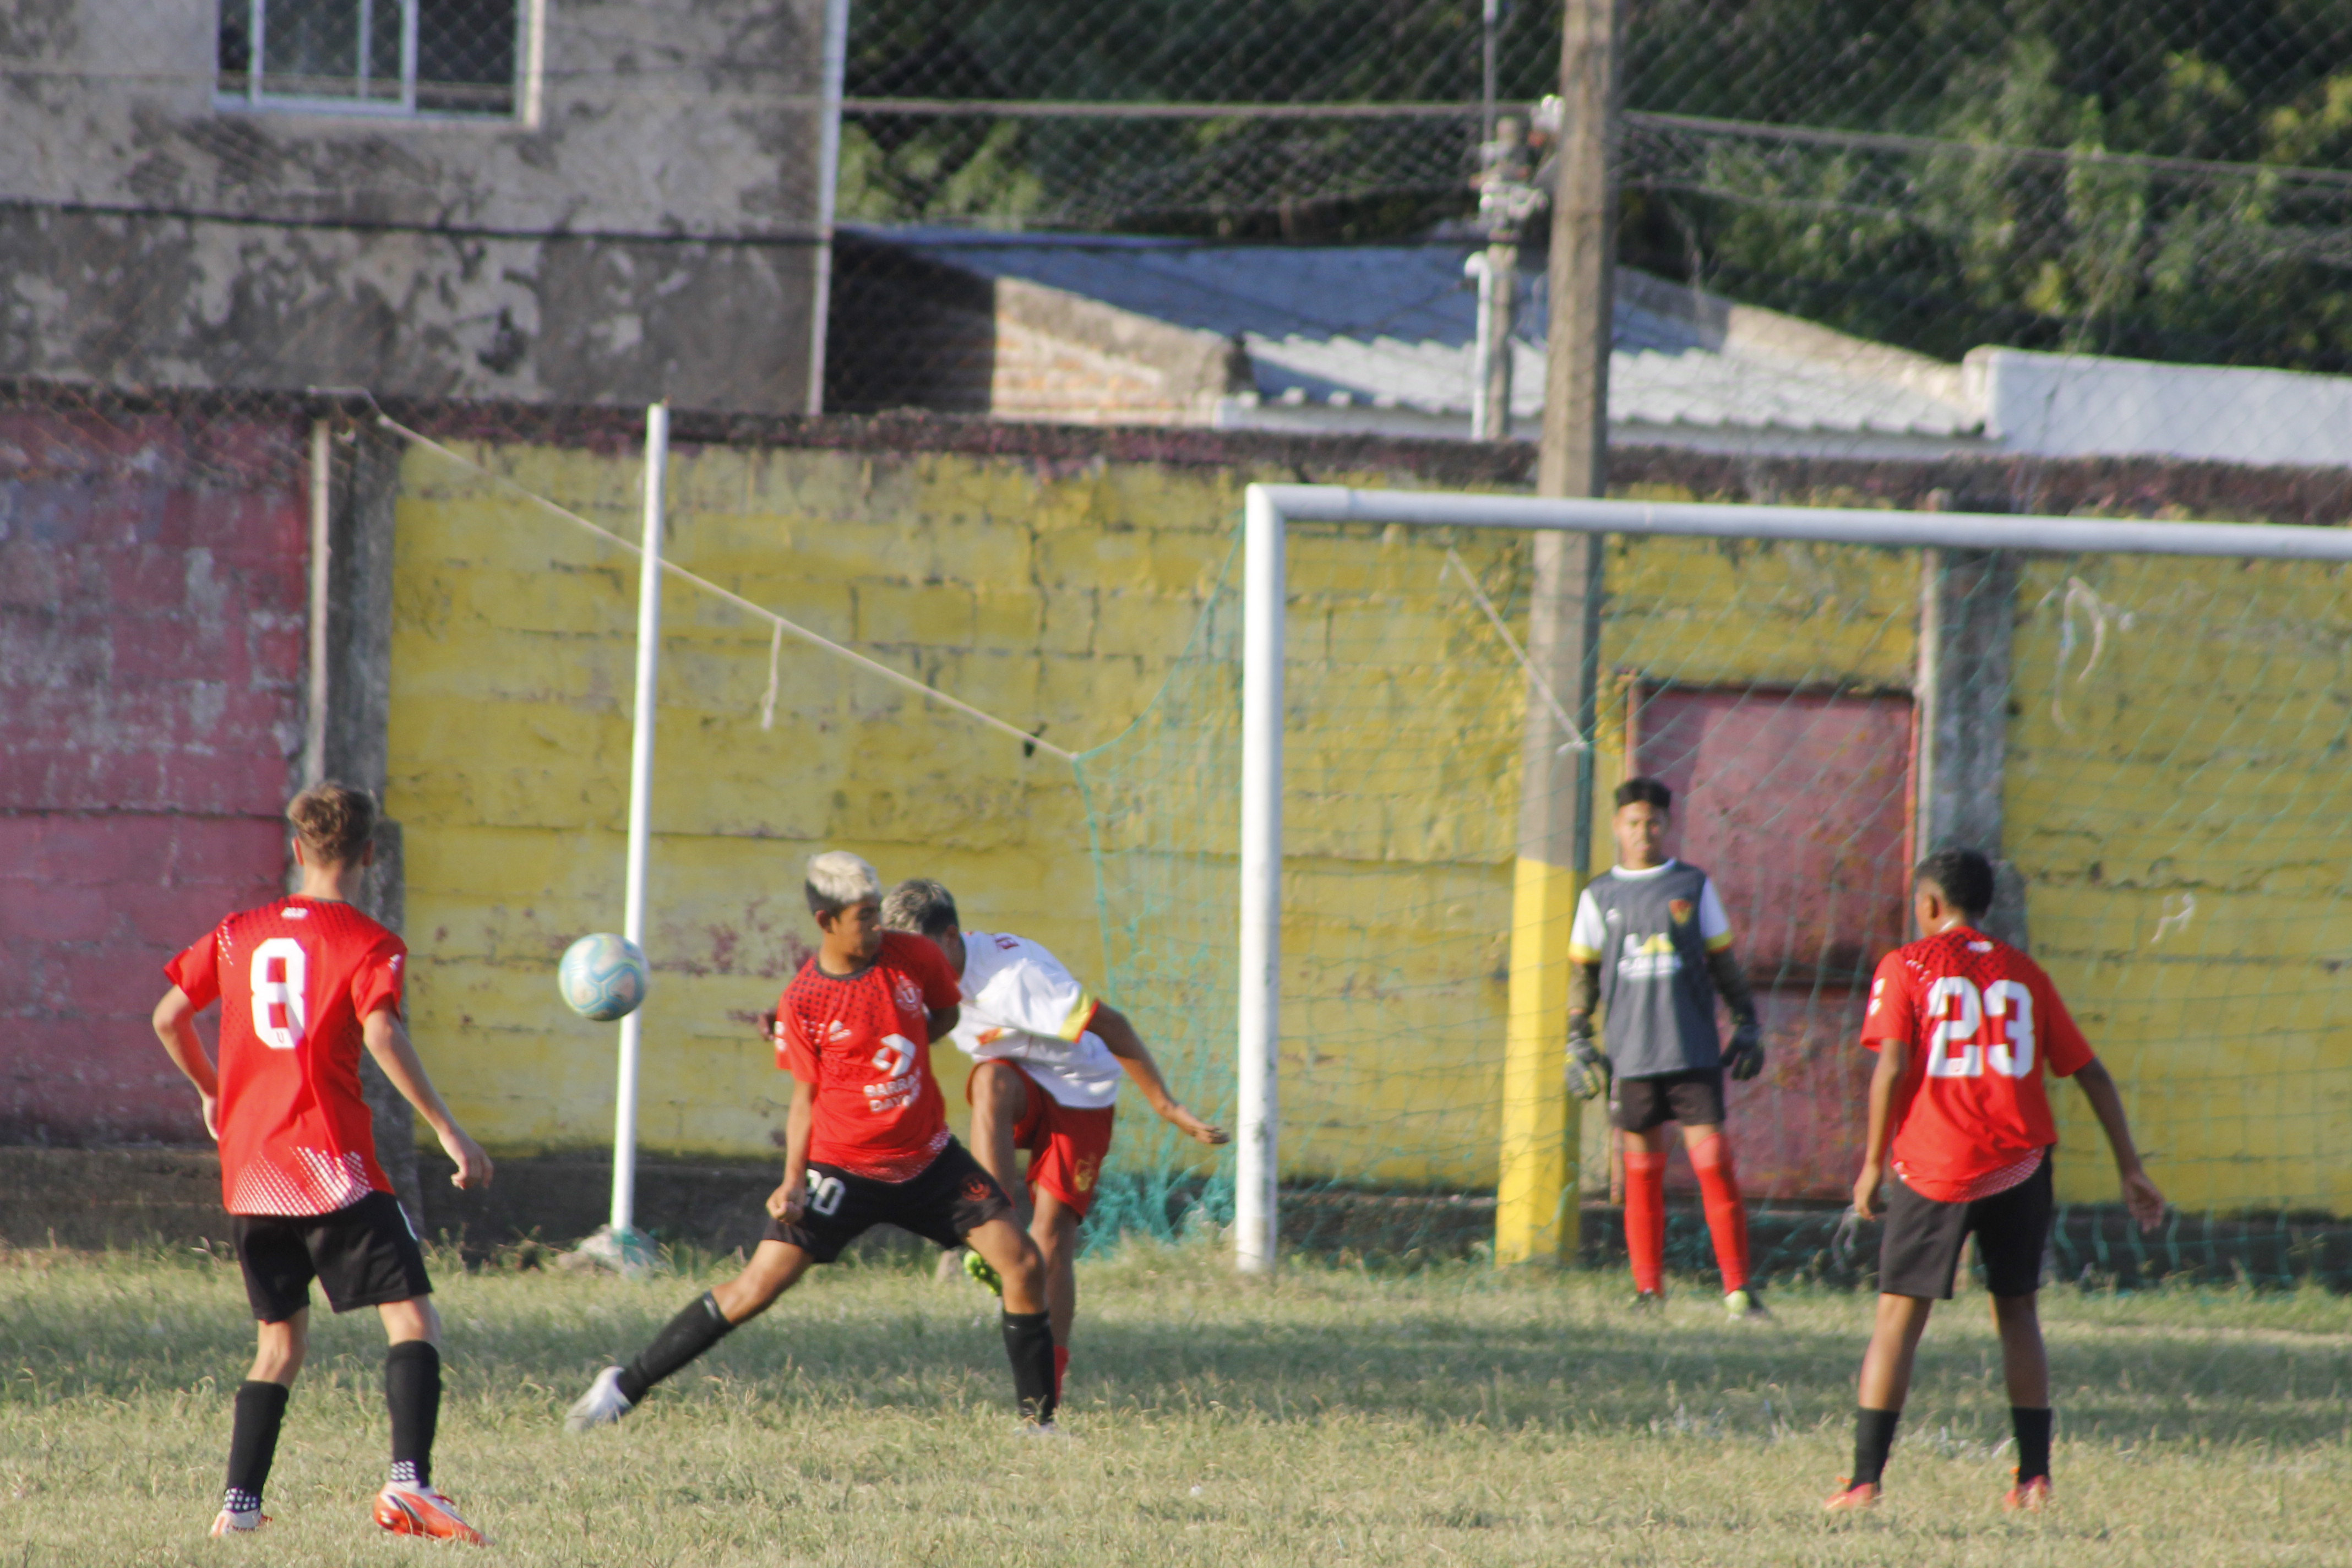 Liga Salteña de Baby Fútbol Selecciones salteñas jugarán hoy en